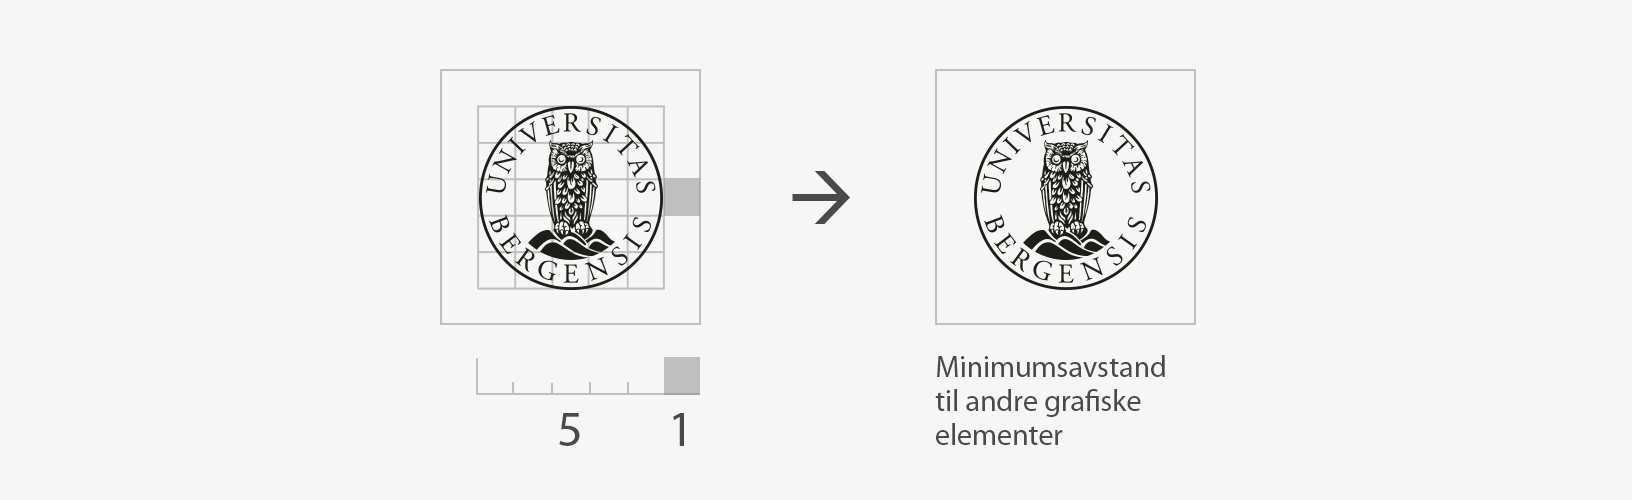 Eksempel som viser minimumsavstand fra emblem til andre elementer